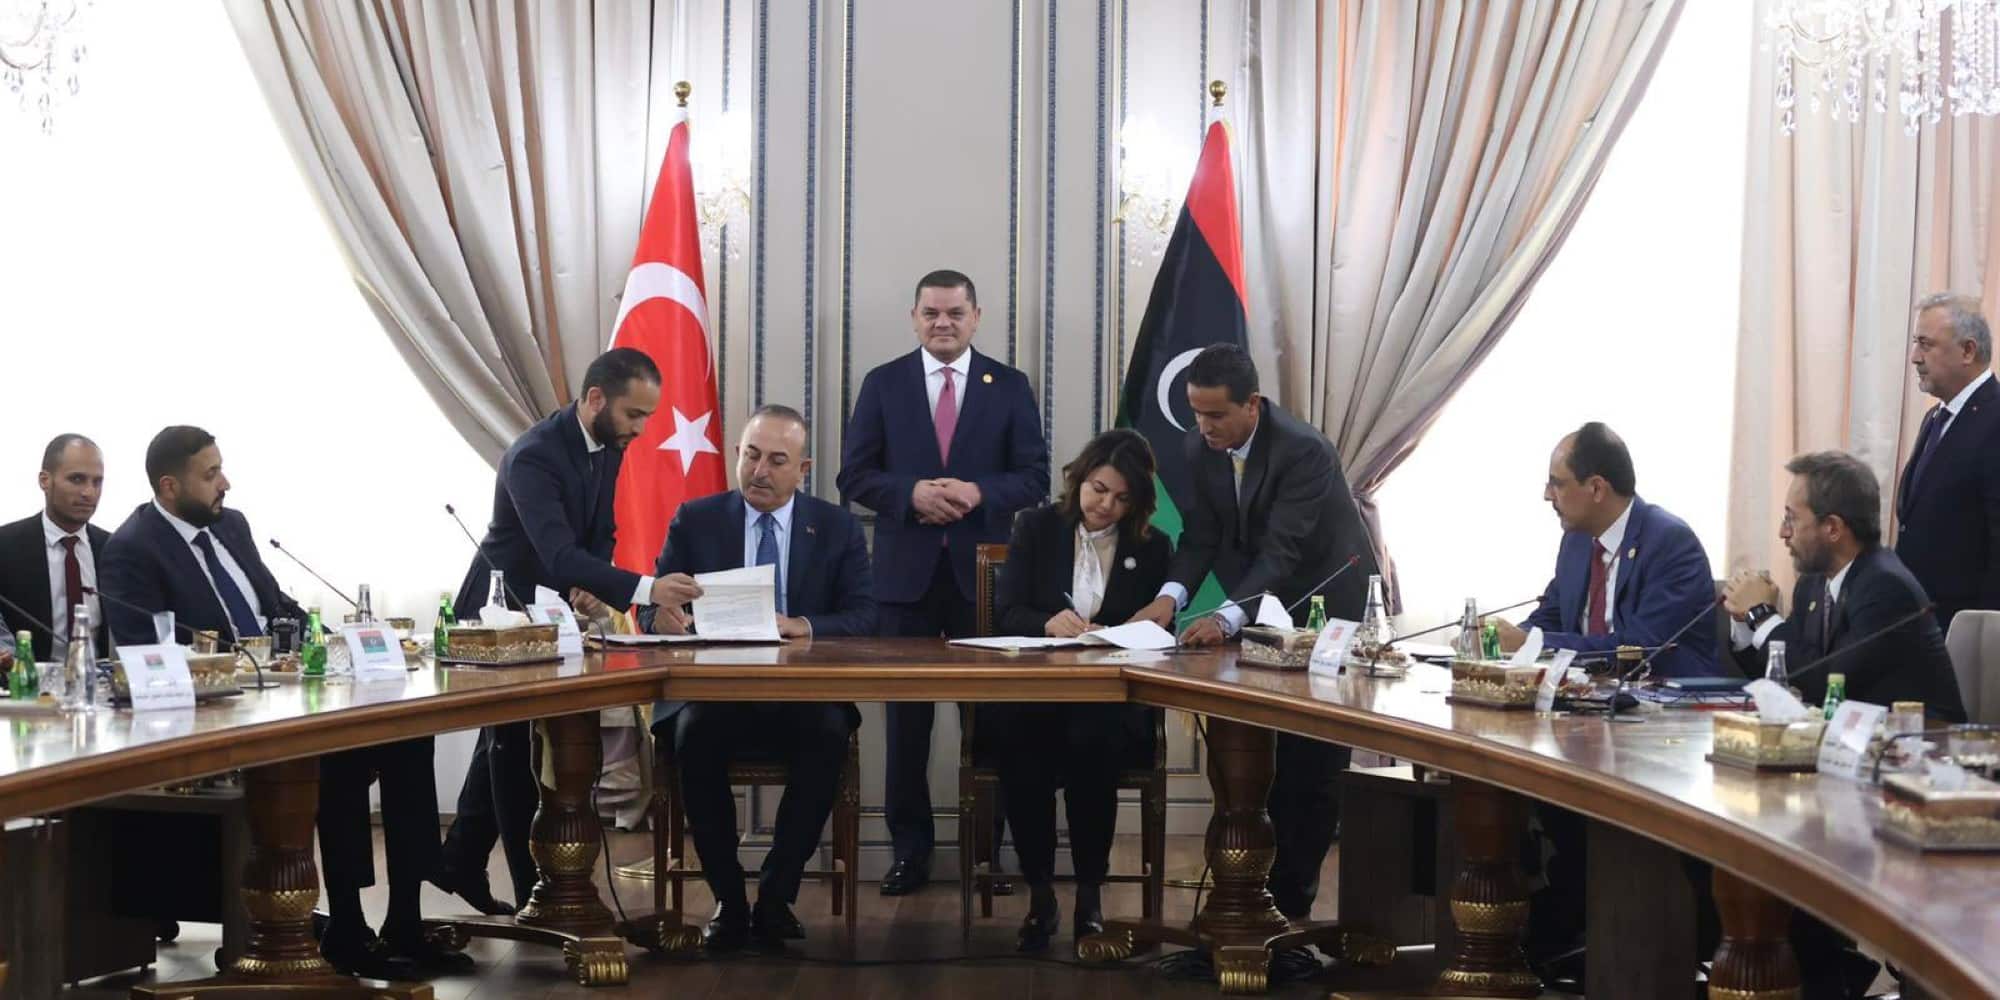 Η Τουρκία υπέγραψε μνημόνιο συνεργασίας με τη Λιβύη για τους υδρογονάνθρακες